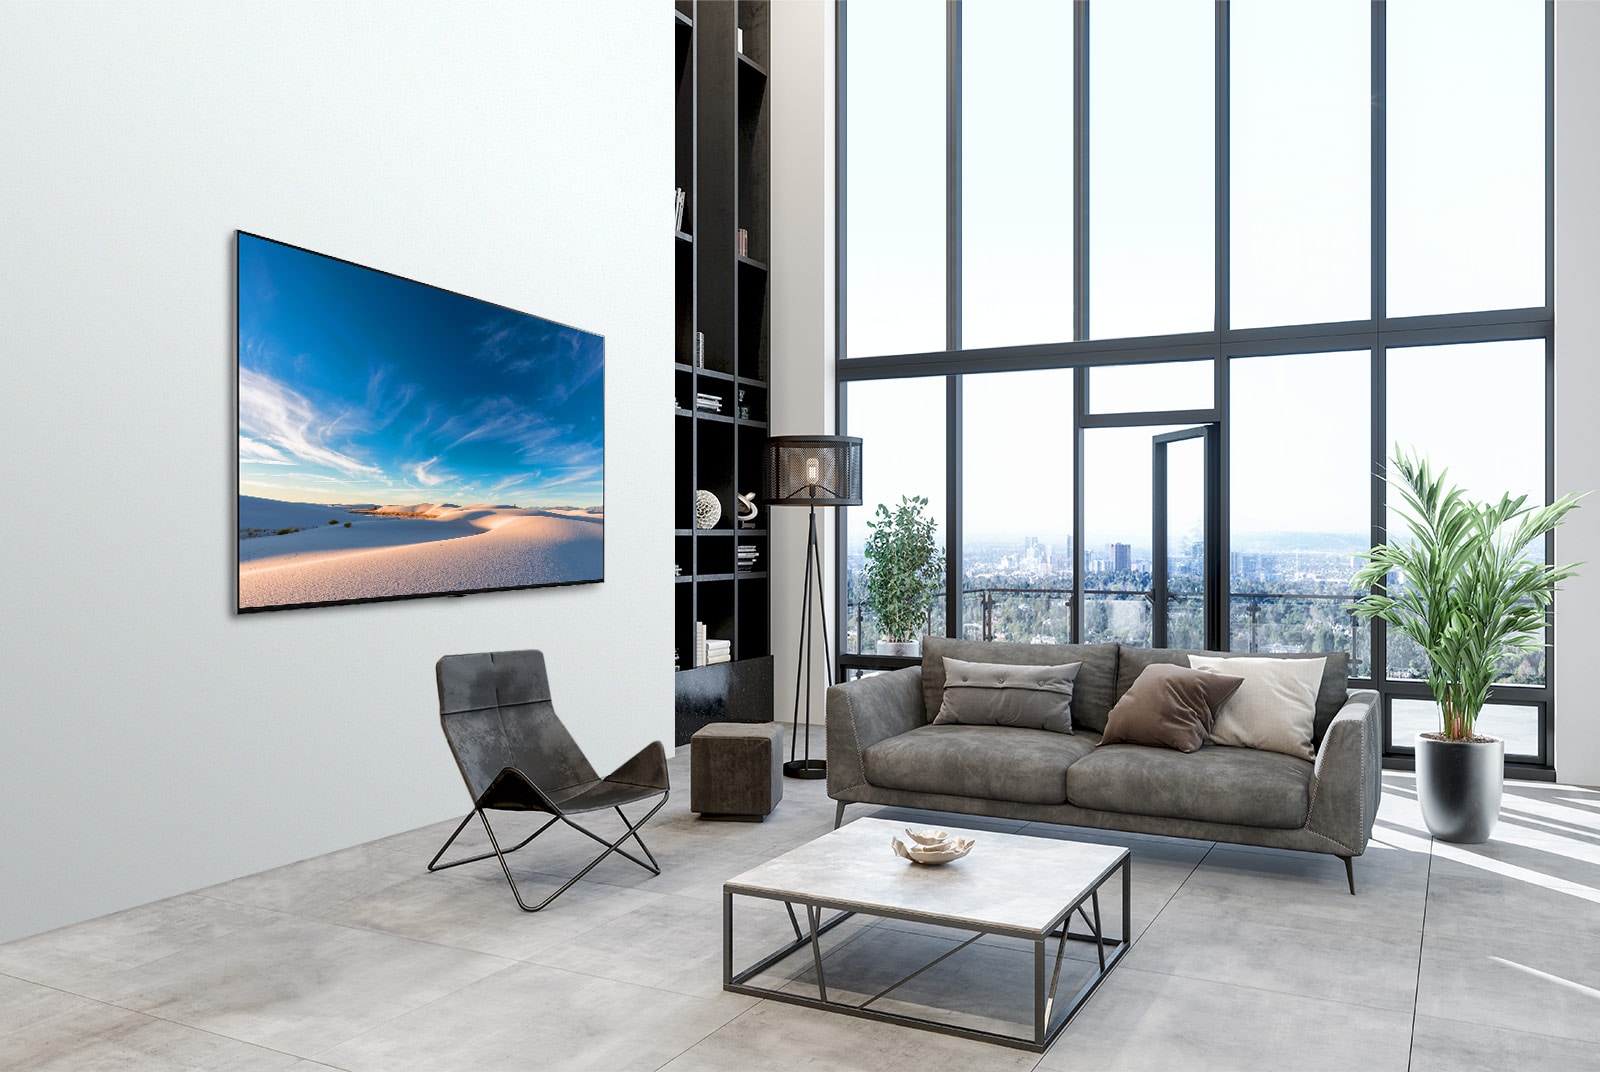 Un televisor LG QNED instalado en plano contra la pared en un espacio interior moderno.